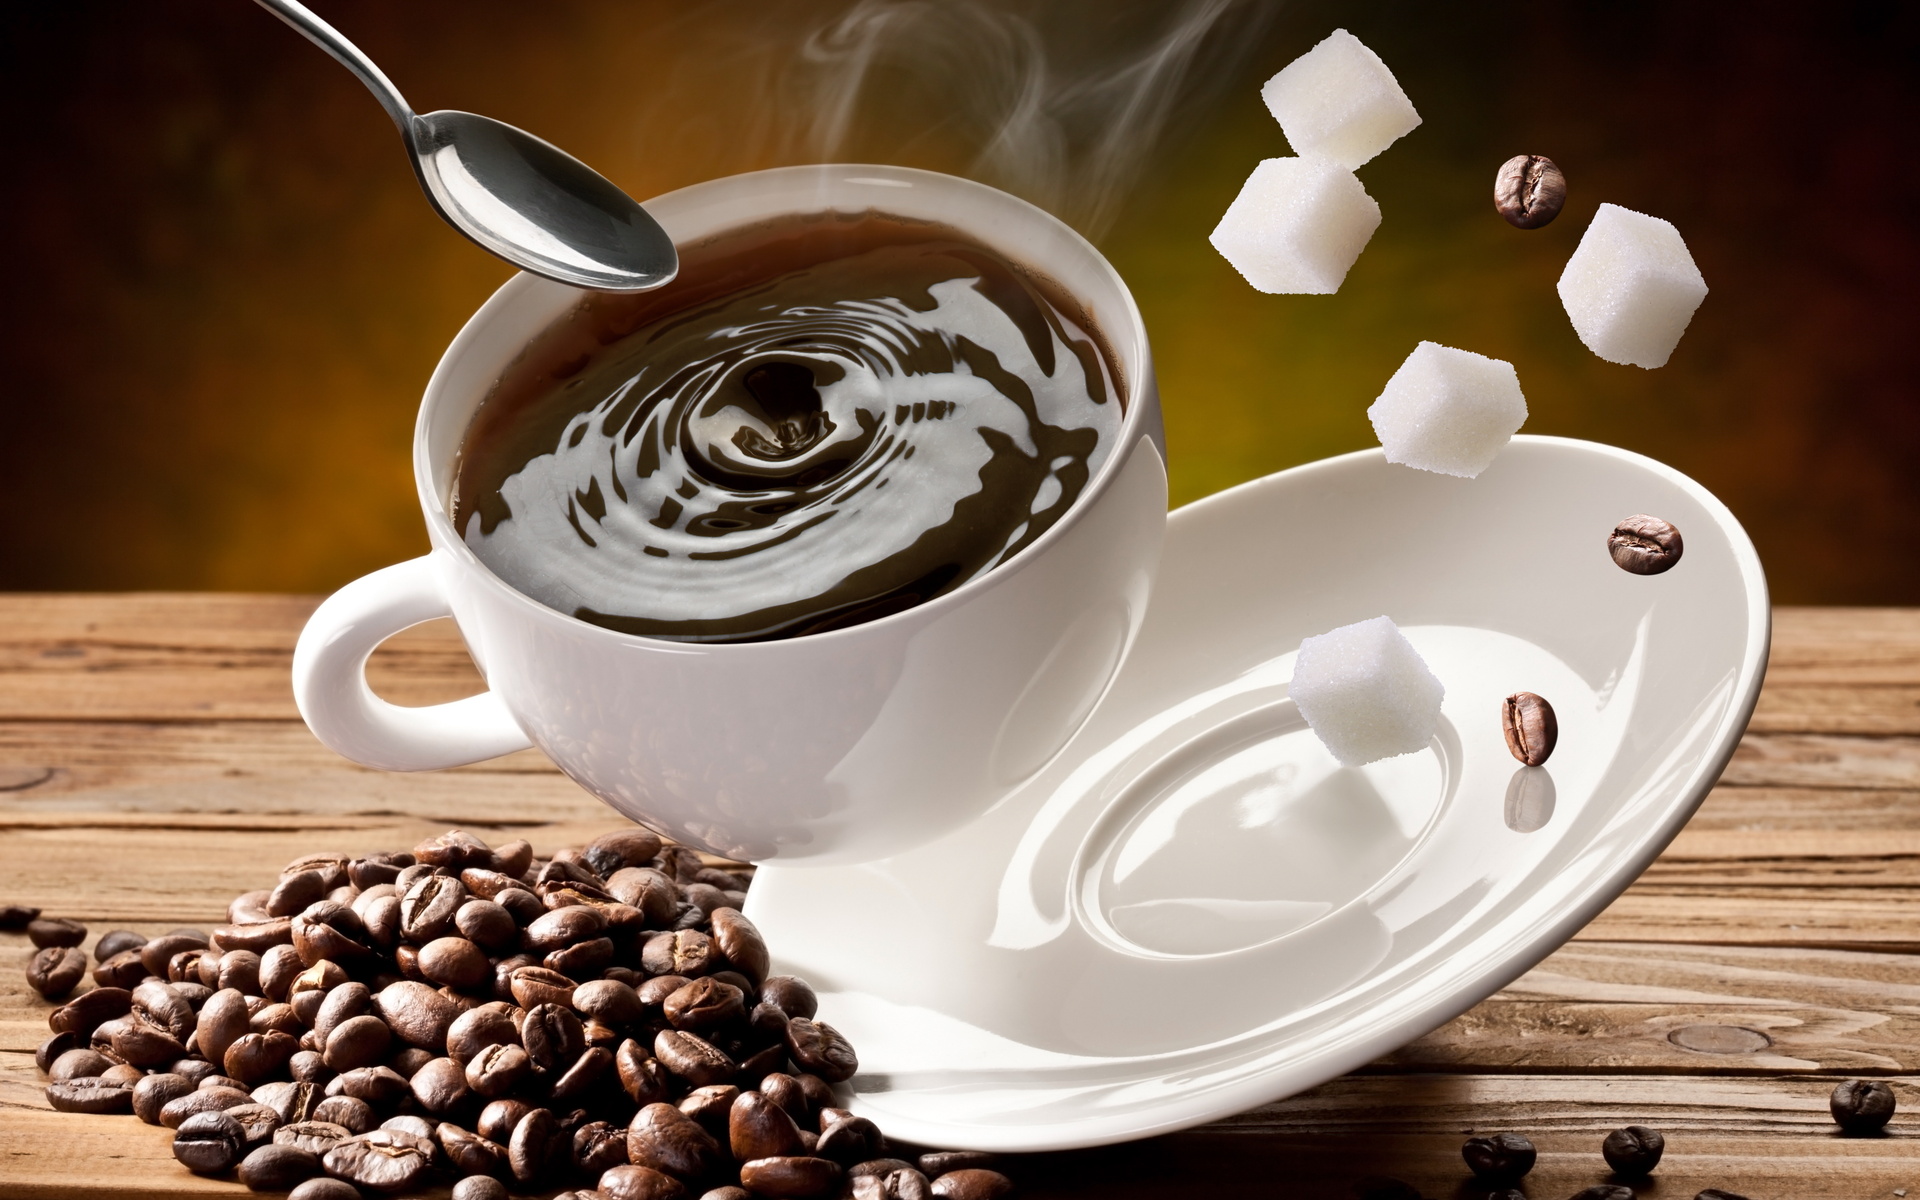 コーヒーの壁紙,カップ,コーヒーカップ,カフェイン,カップ,ジャワコーヒー